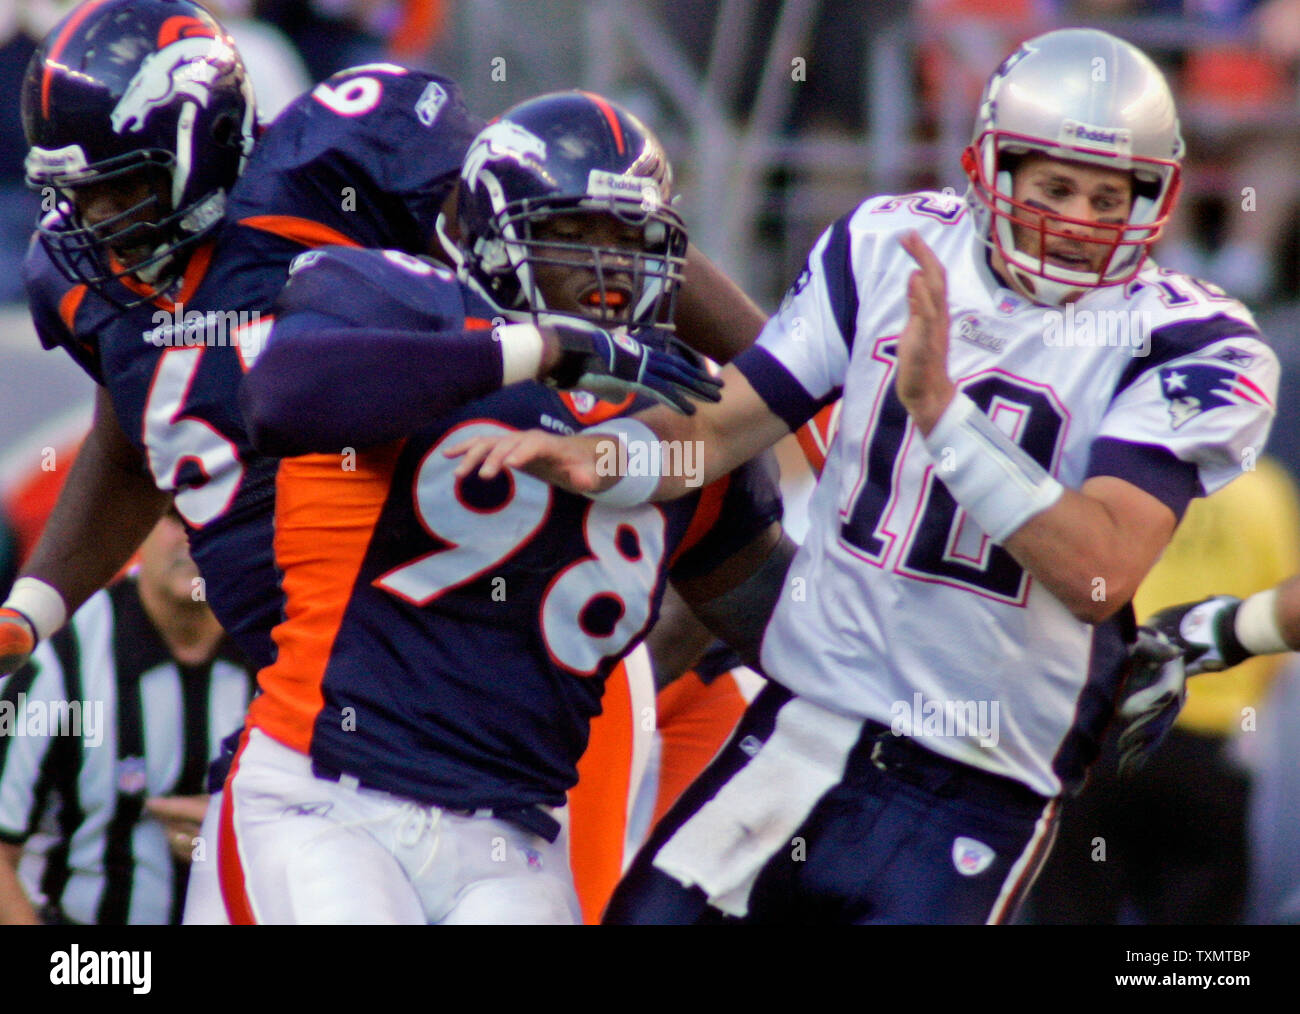 New England Patriots Quarterback Tom Brady (R) wird von den Denver Broncos defensive Ende Courtney Brown auf einem Pass rush bei Invesco Field in Denver, CO am 16. Oktober 2005 gestoßen. Broncos defensiver Gerard Warren auf das Spiel unterstützt. Denver beat New England 28-20. (UPI Foto/Gary C. Caskey) Stockfoto